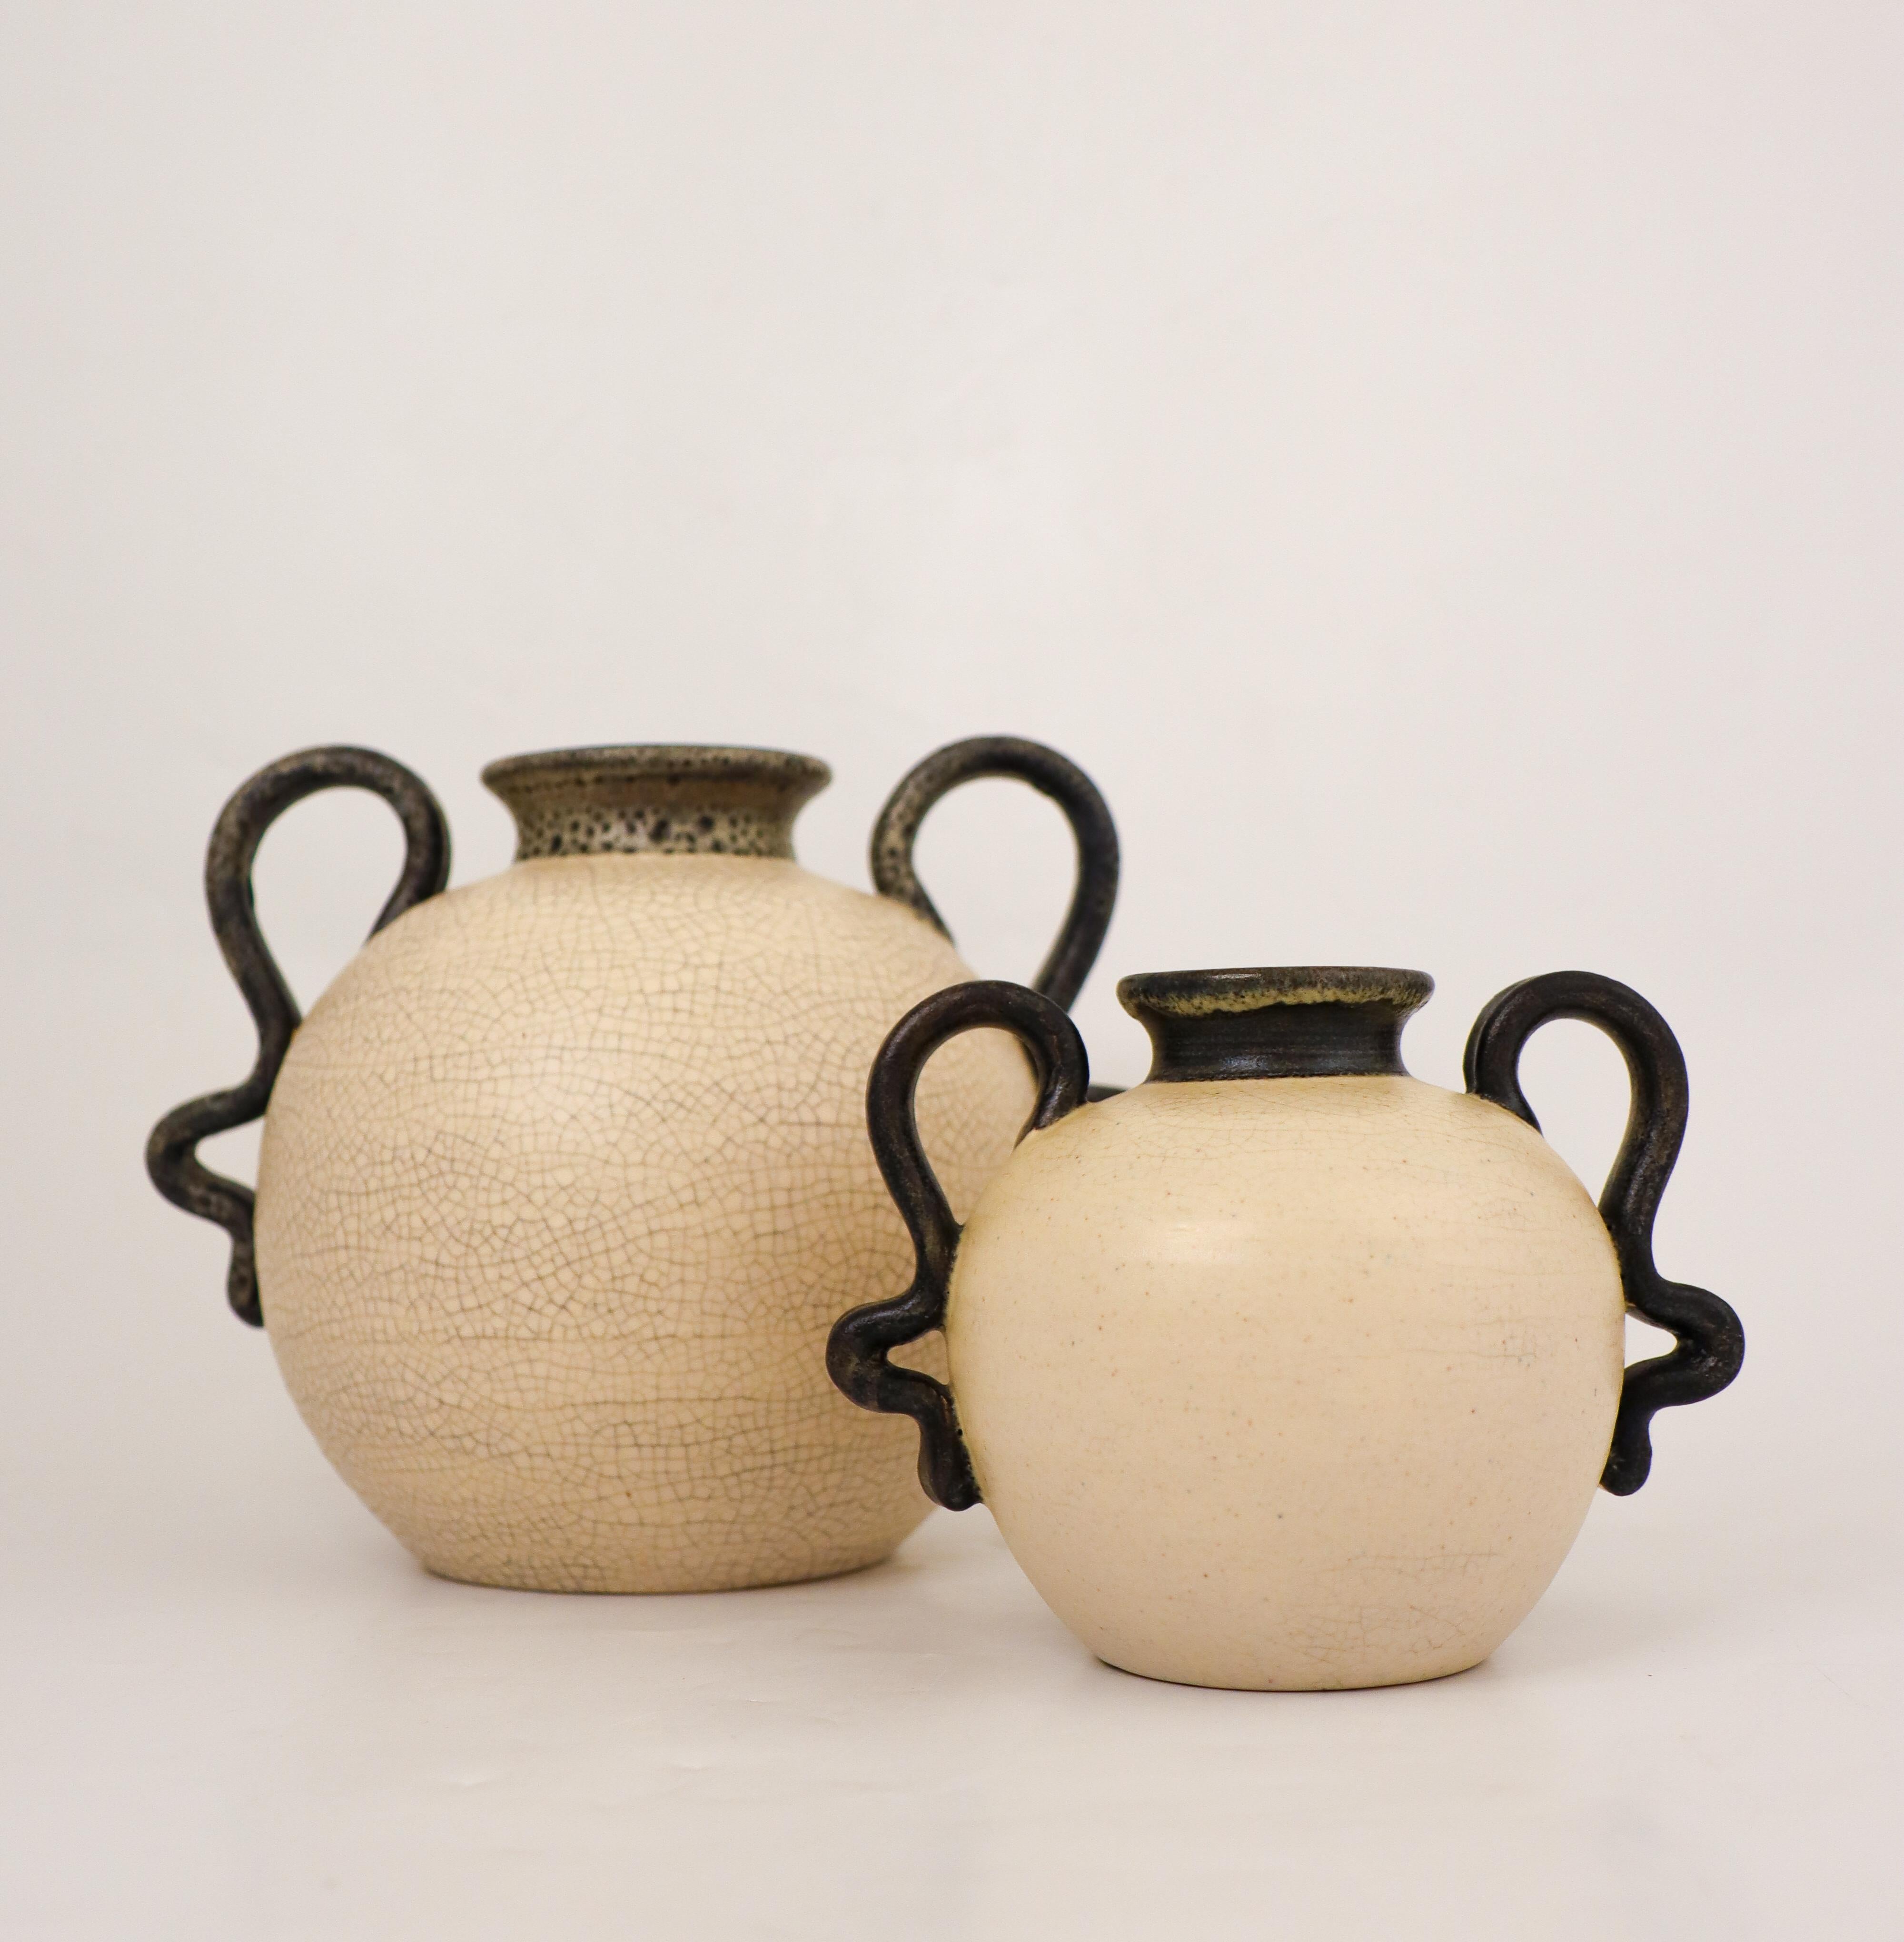 Une paire de jolis vases de couleur crème avec de jolies poignées, conçus par Eva Jancke-Björk chez Bo Fajans à Gefle dans les années 1940. La plus grande mesure 16,5 cm de haut et 20 cm de diamètre et la plus petite 11 cm de haut et 14,5 cm de